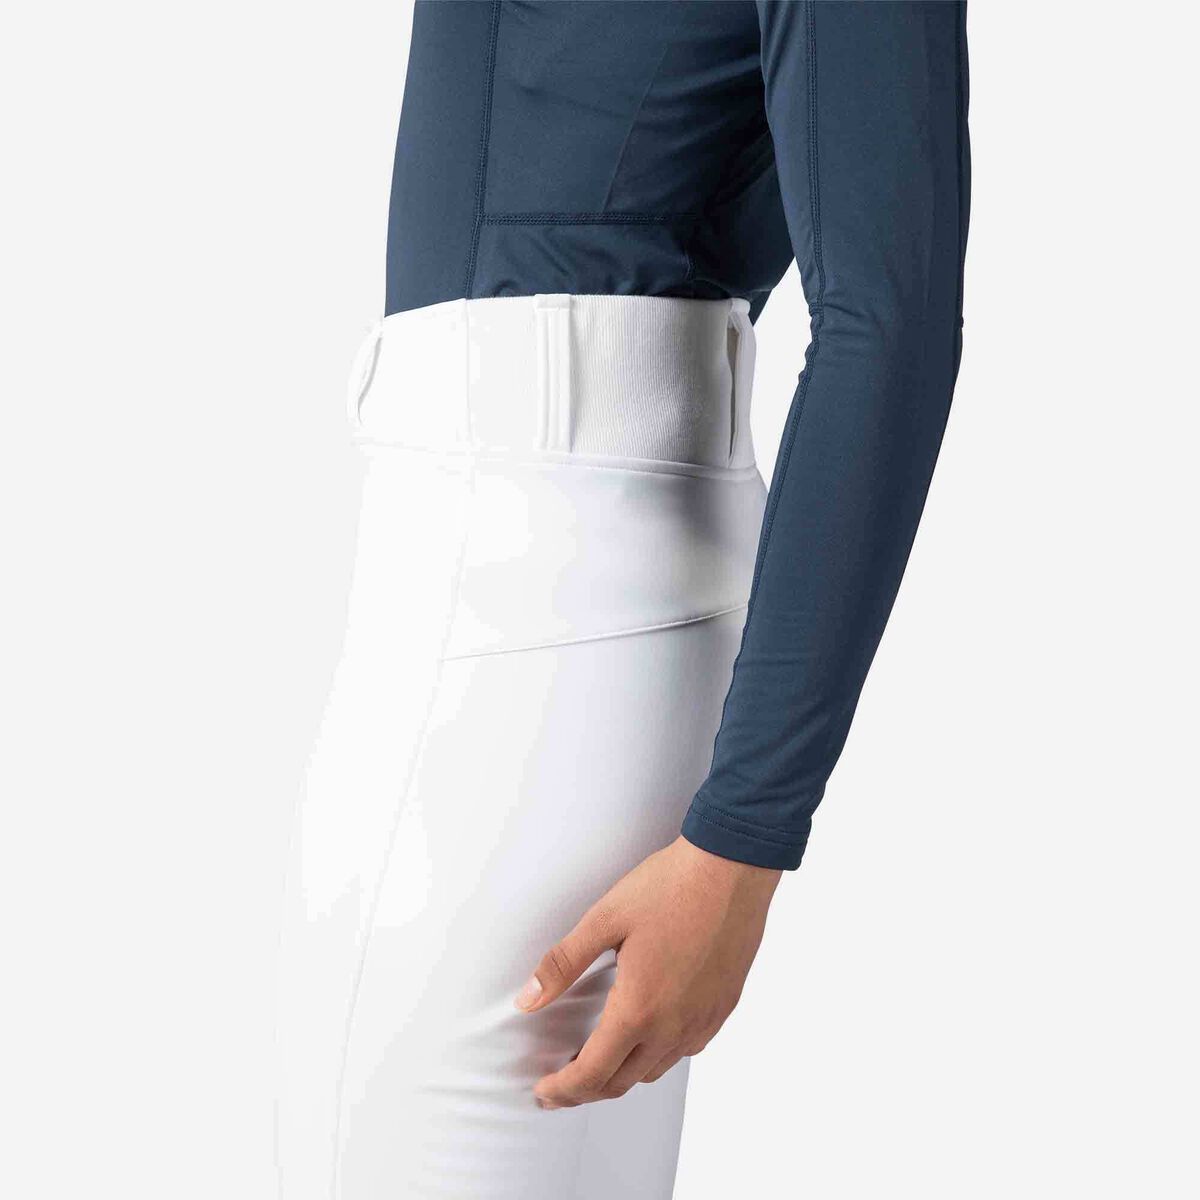 Rossignol Women's Soft Shell Ski pants white